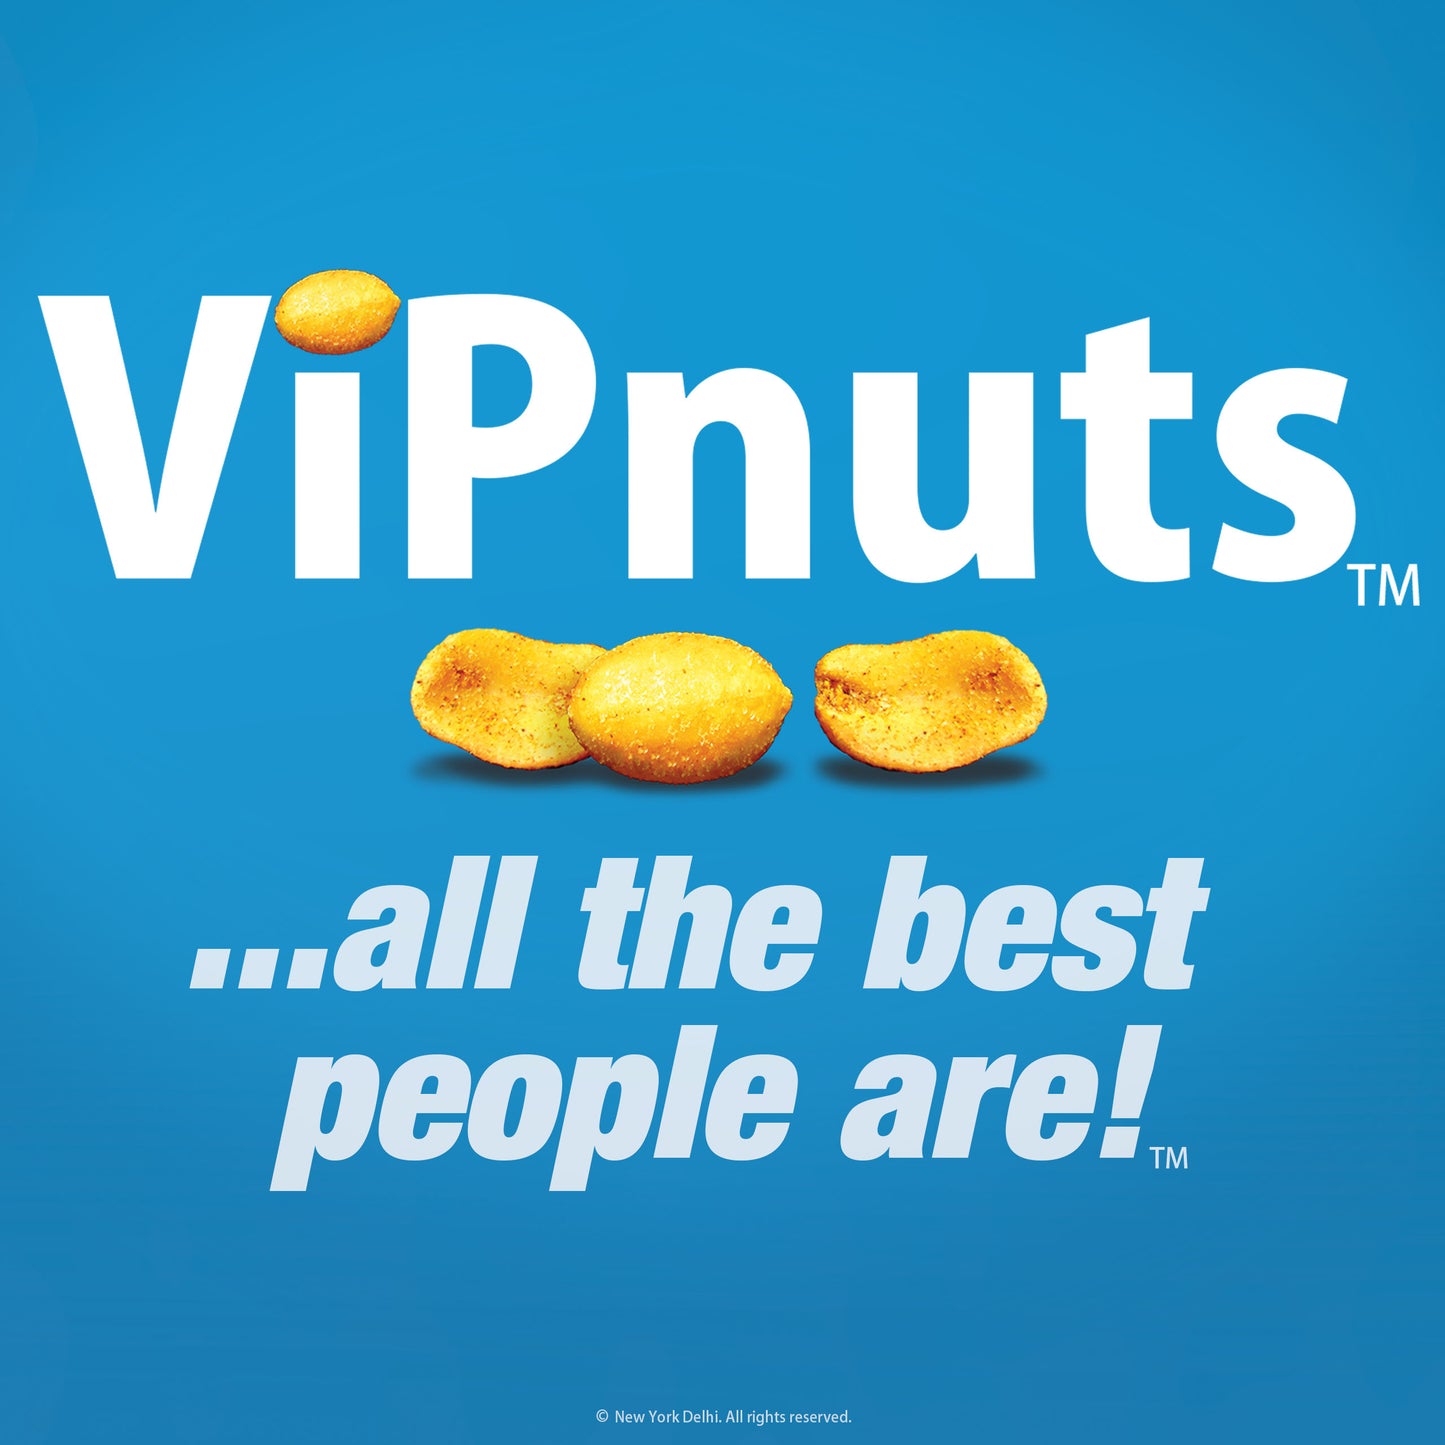 ViPnuts Bollywood BBQ peanuts 63g pack